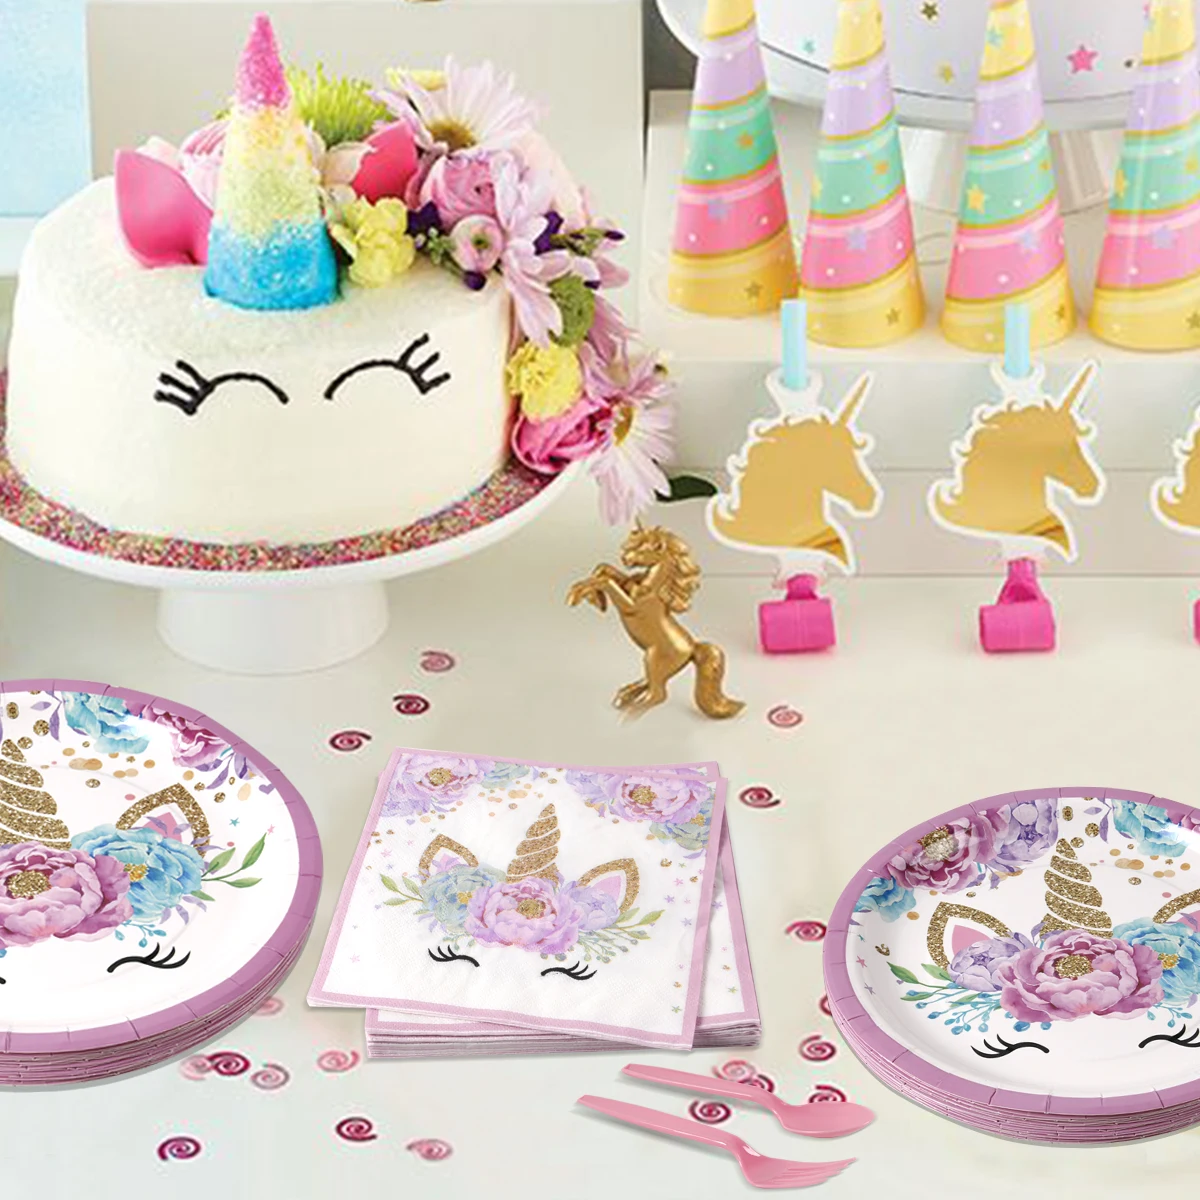 QIFU одноразовая посуда для вечеринок с единорогом Одноразовая бумажная тарелка чашка скатерть с единорогом декор для вечеринки на день рождения